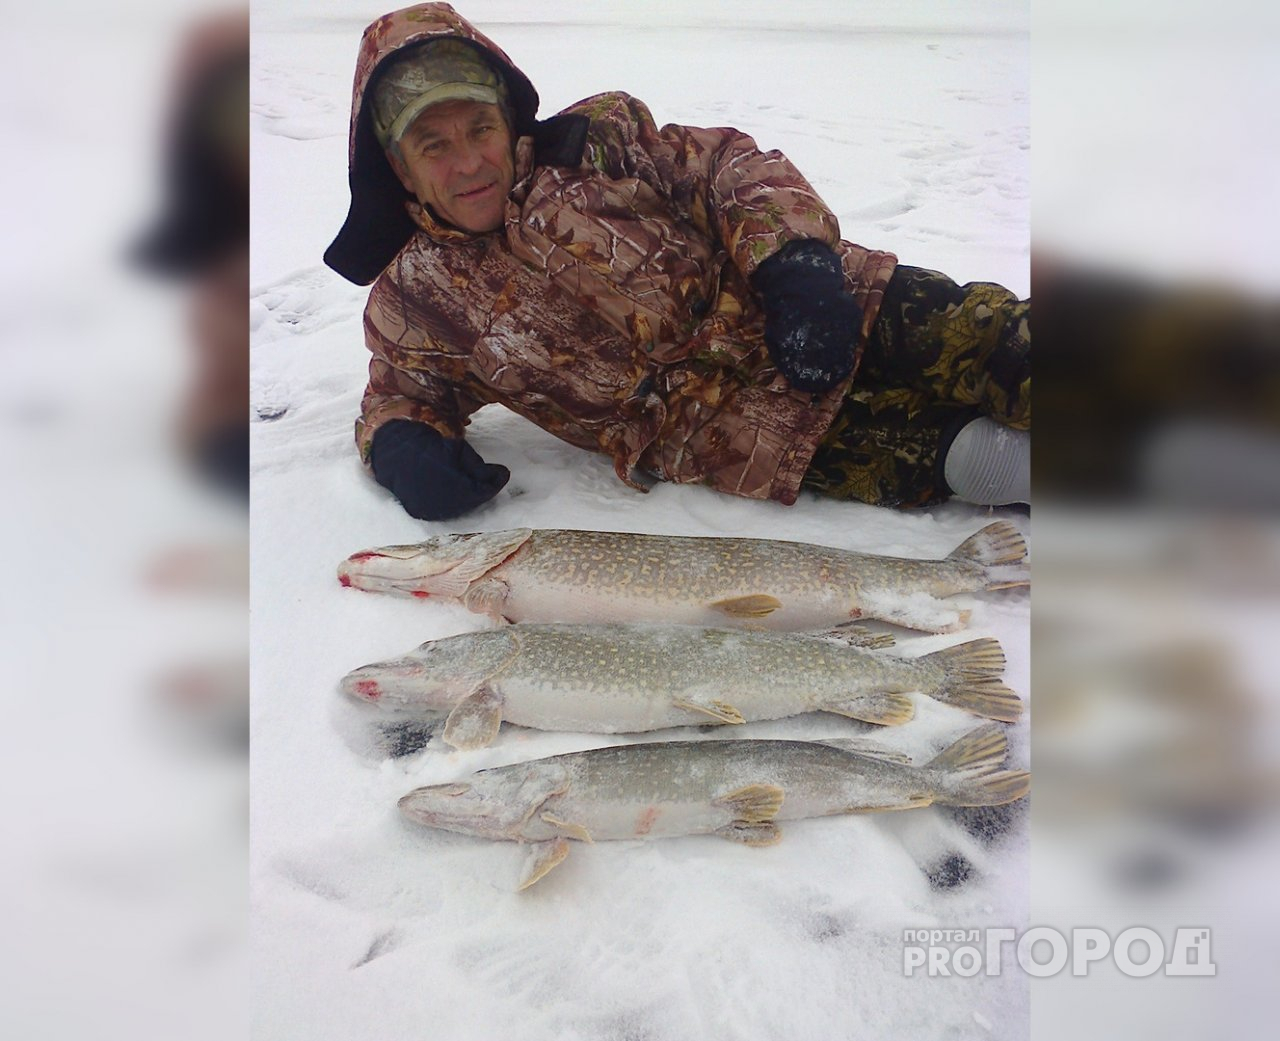 Бывалый рыбак рекомендует не выходить на лед и рассказал о своих опасных ситуациях